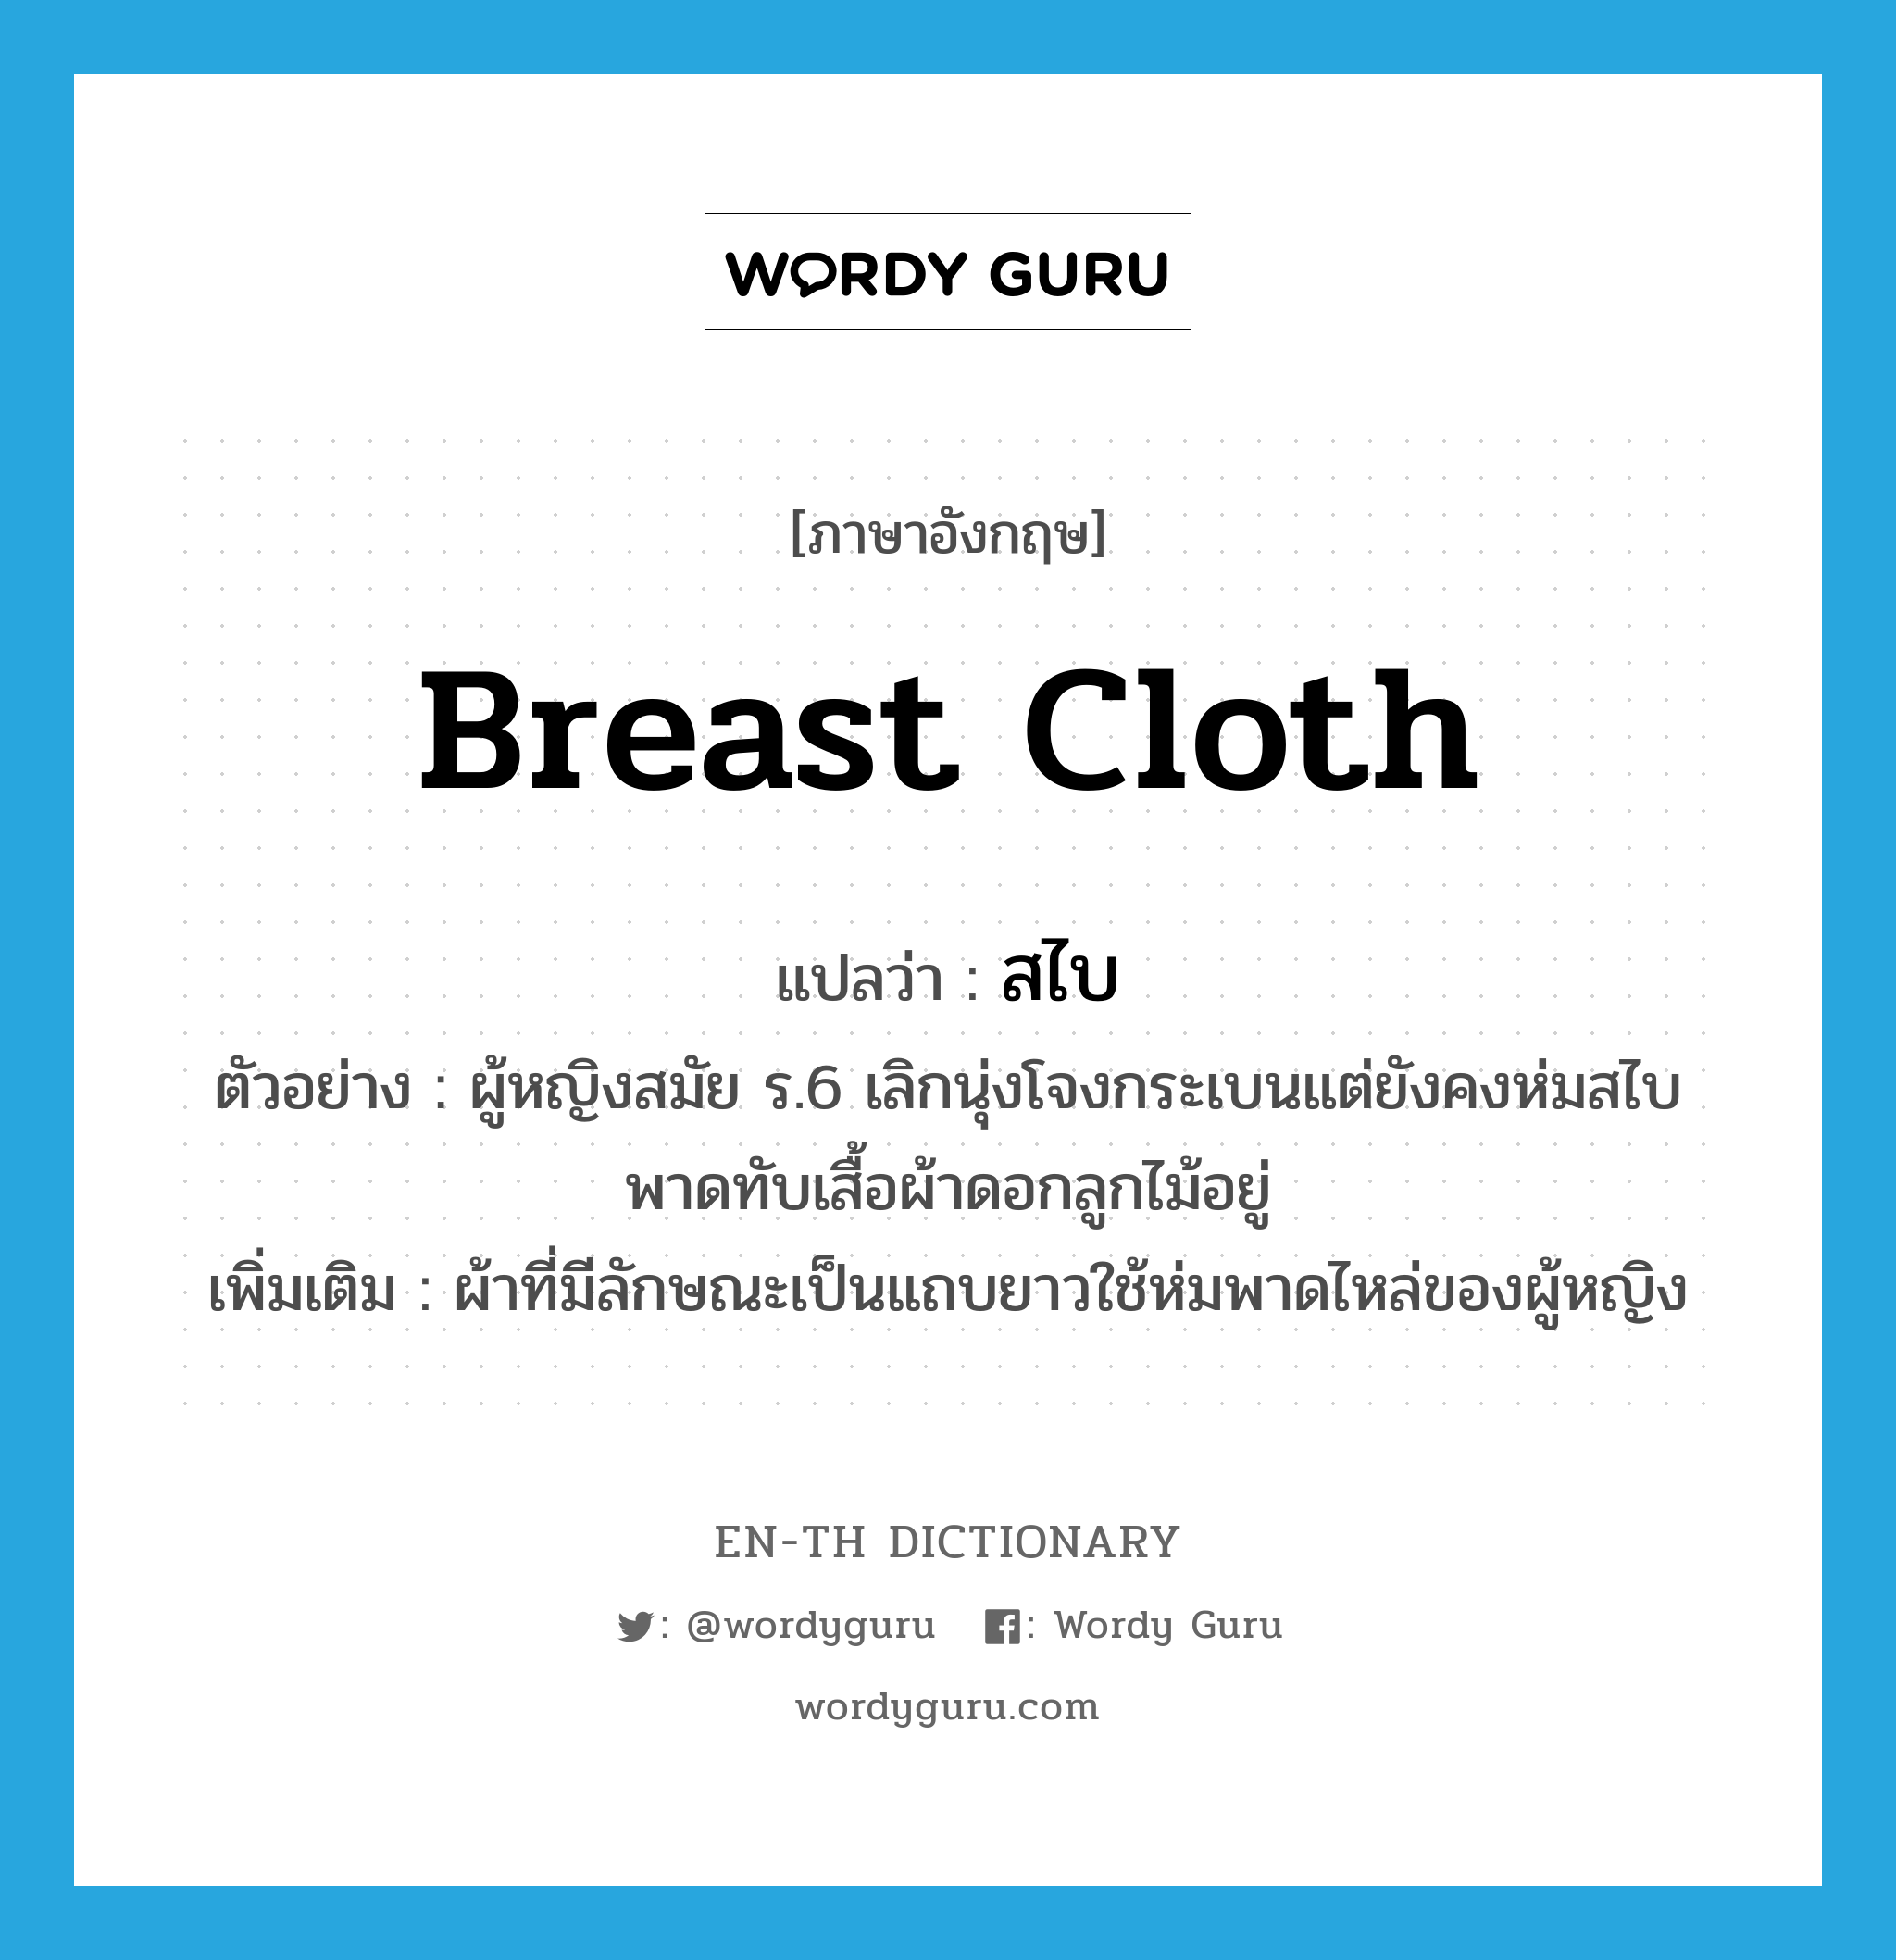 breast cloth แปลว่า?, คำศัพท์ภาษาอังกฤษ breast cloth แปลว่า สไบ ประเภท N ตัวอย่าง ผู้หญิงสมัย ร.6 เลิกนุ่งโจงกระเบนแต่ยังคงห่มสไบพาดทับเสื้อผ้าดอกลูกไม้อยู่ เพิ่มเติม ผ้าที่มีลักษณะเป็นแถบยาวใช้ห่มพาดไหล่ของผู้หญิง หมวด N